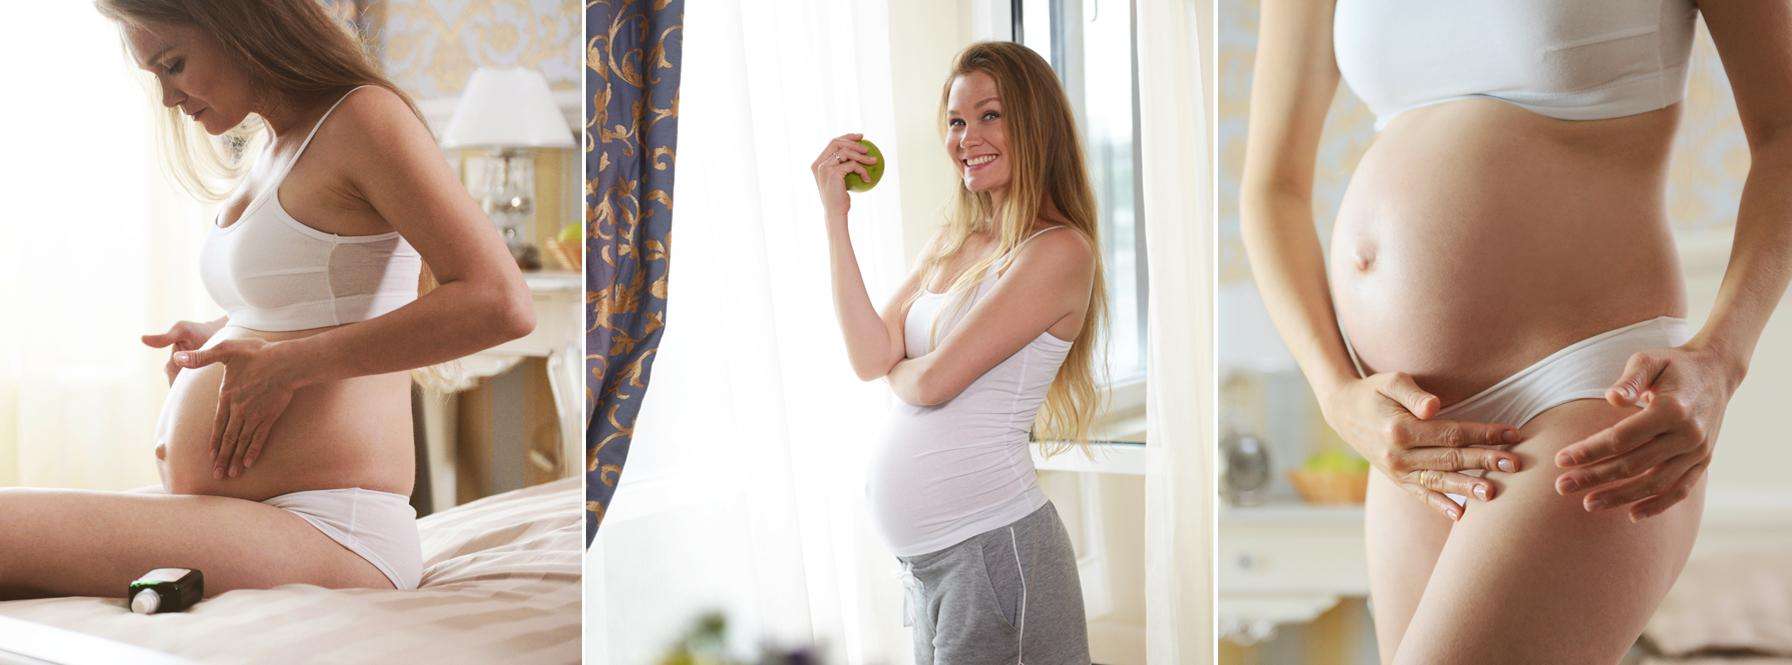 15-16 недель беременности